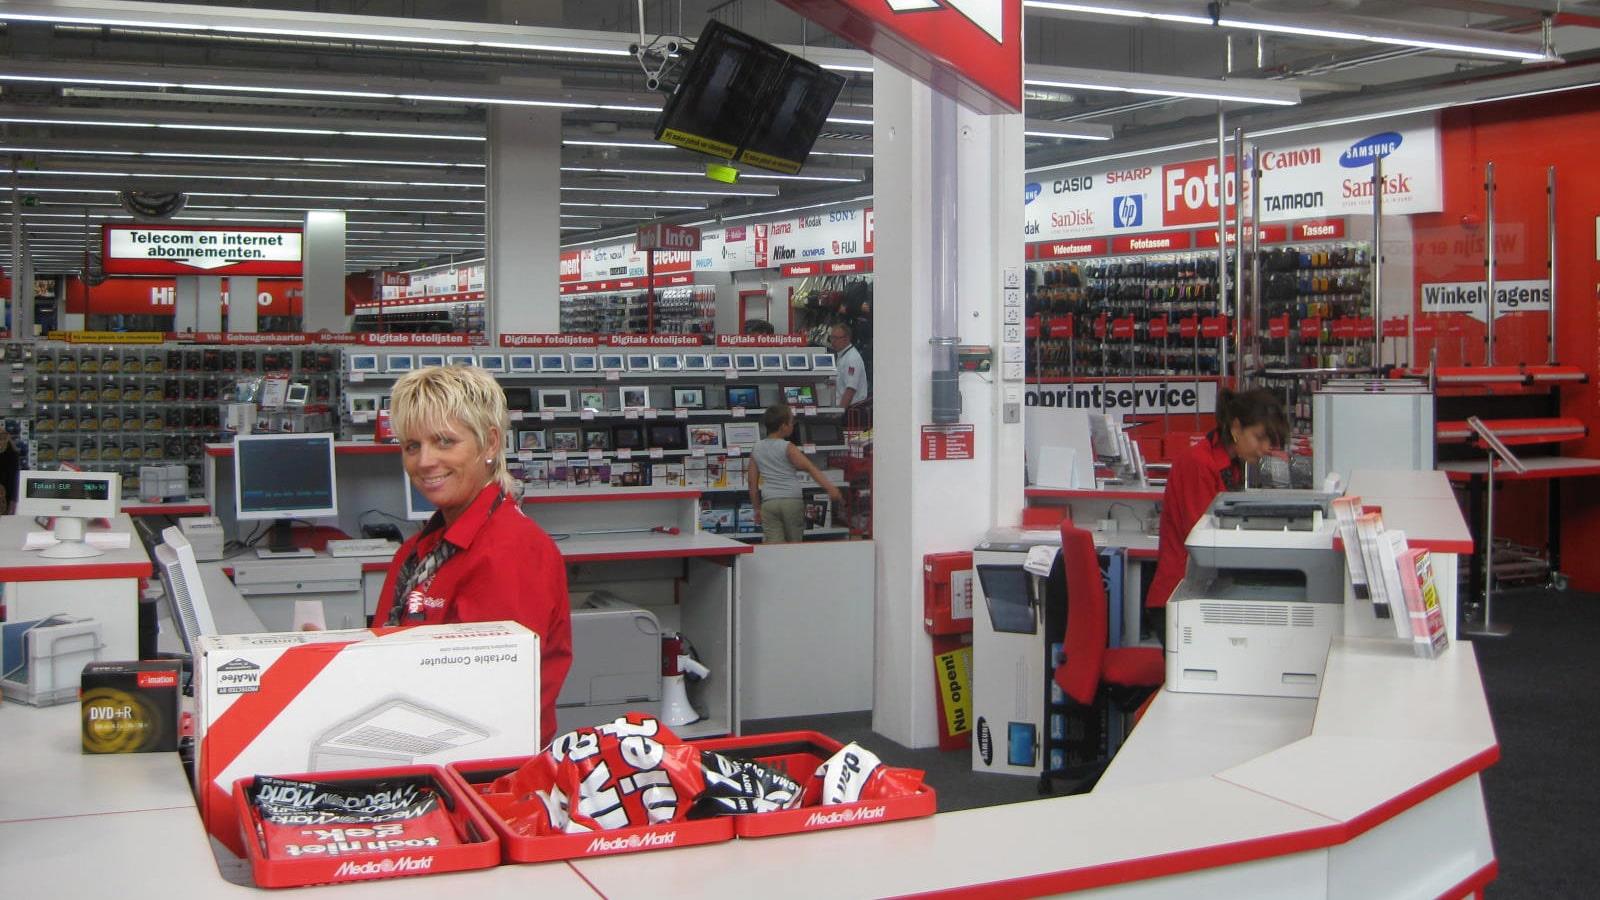 Caissière en uniforme rouge dans un magasin Media Markt